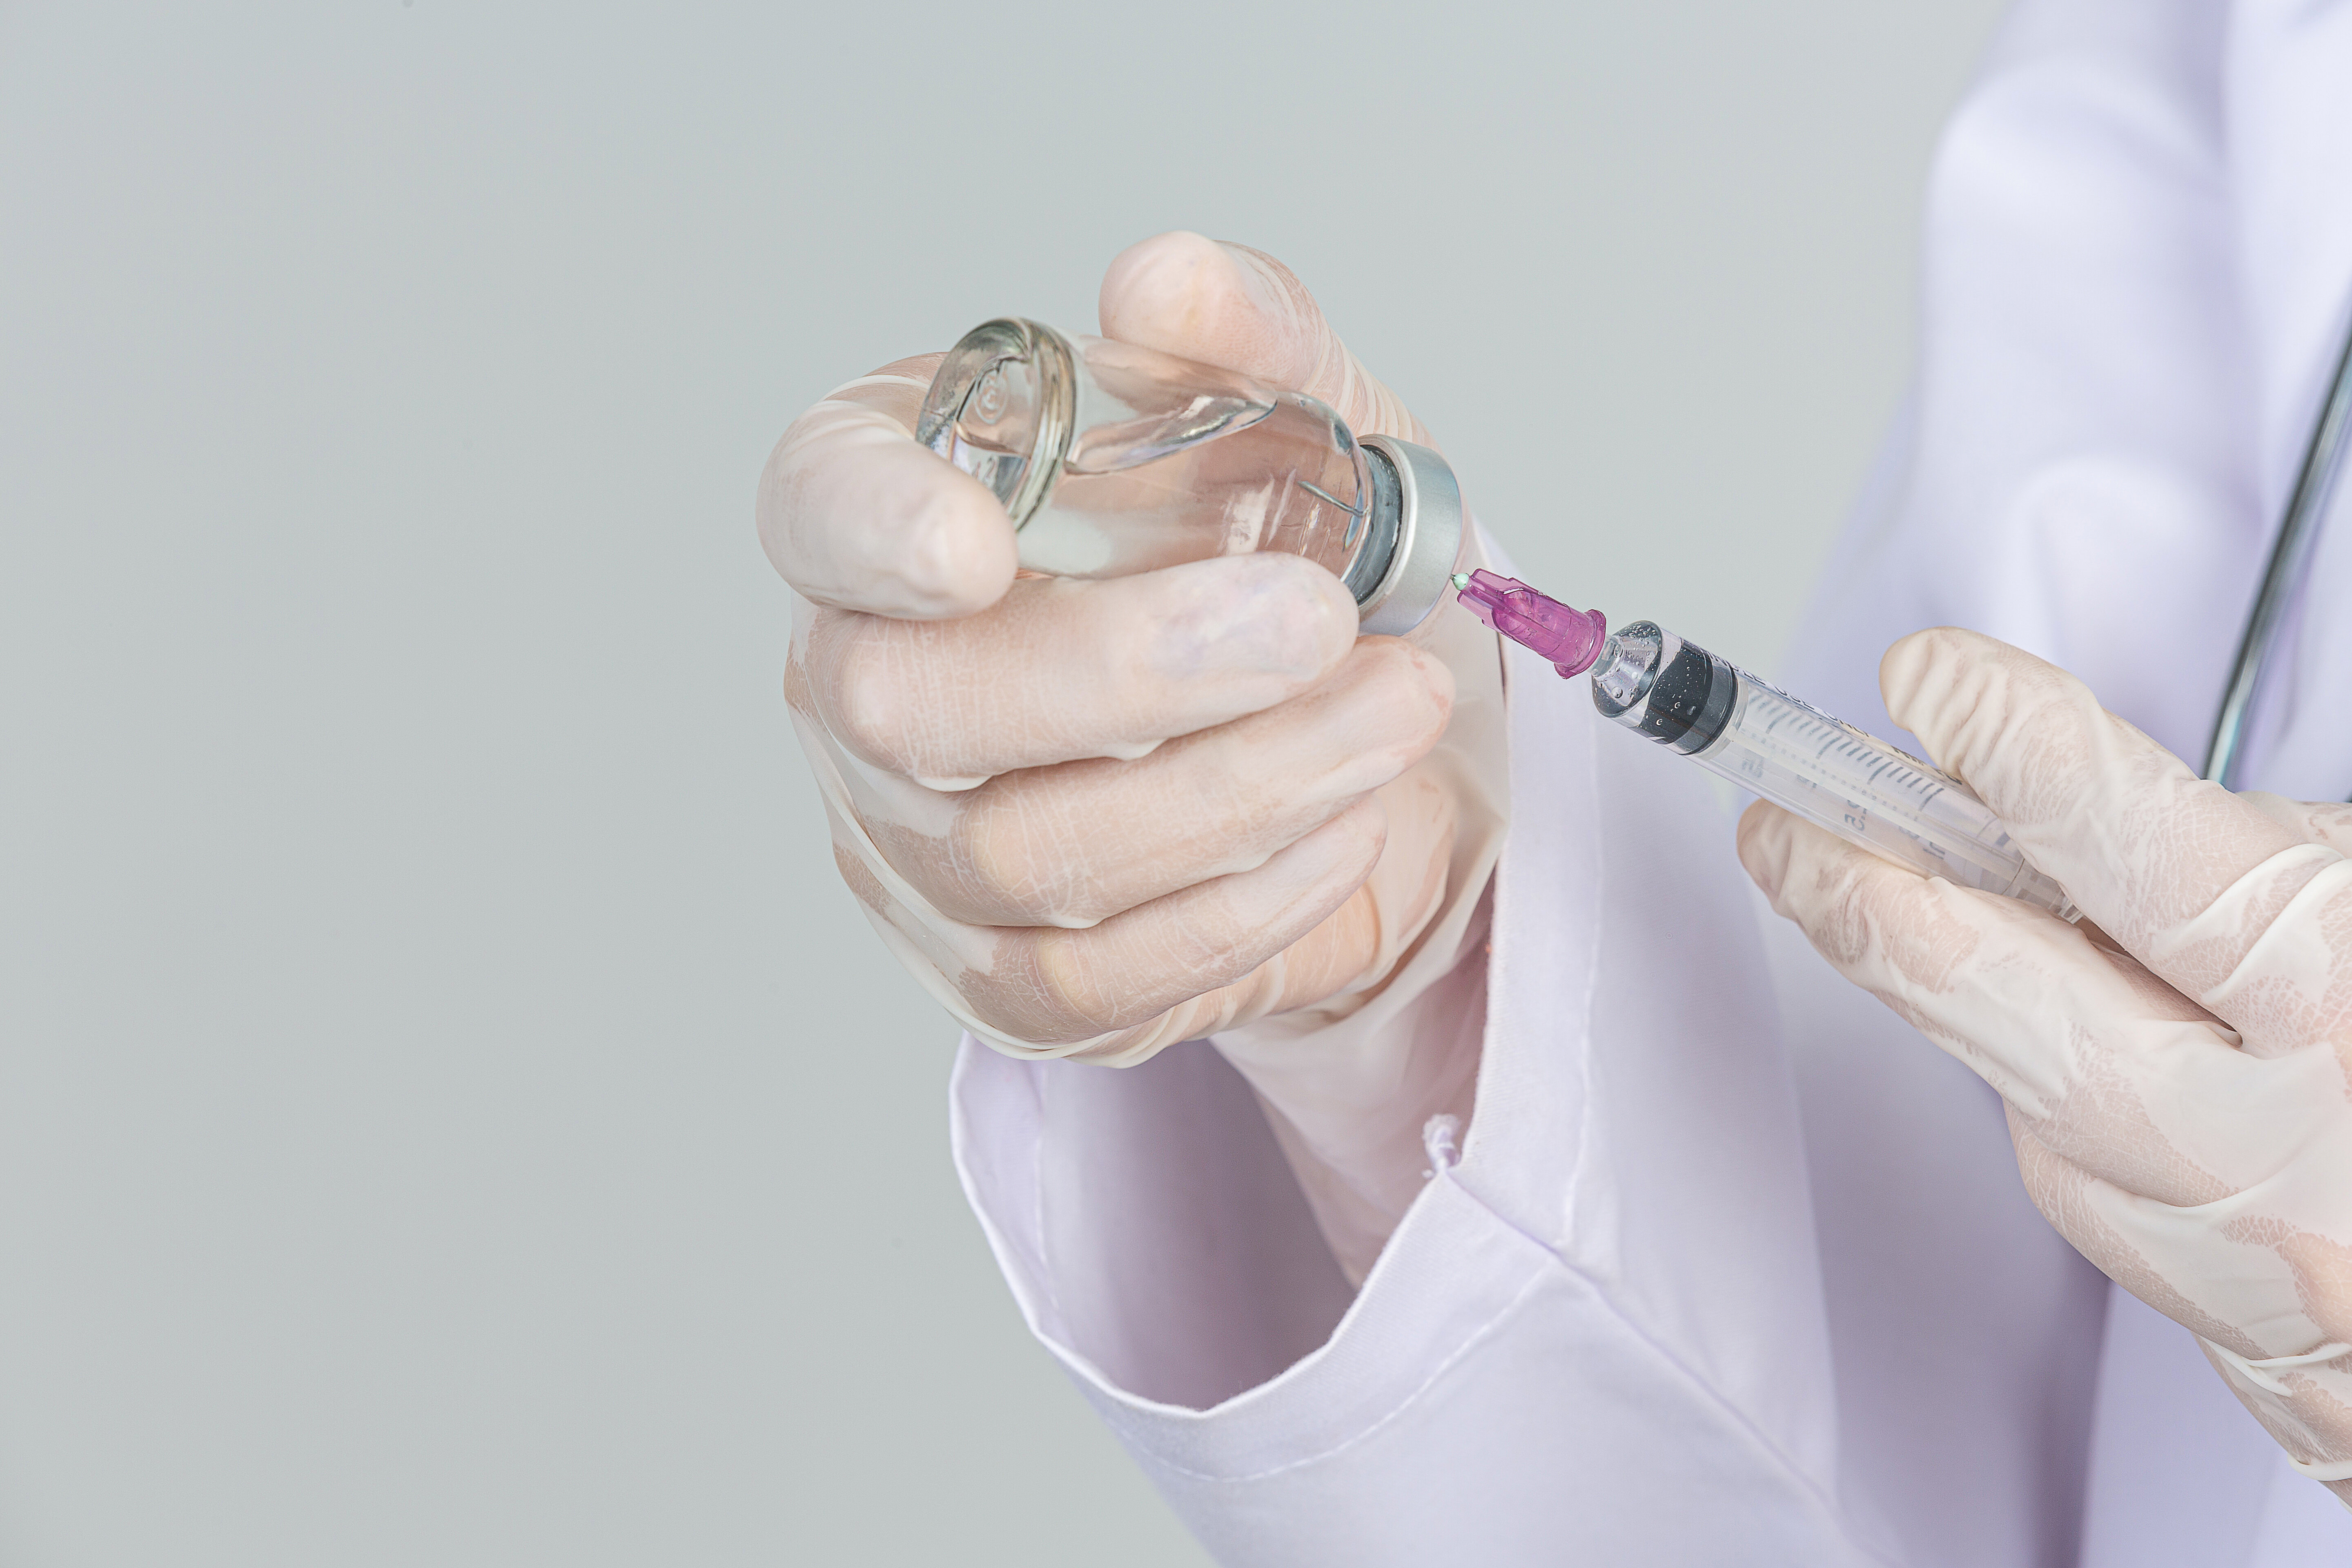 Médico de luvas colocando líquido em uma seringa